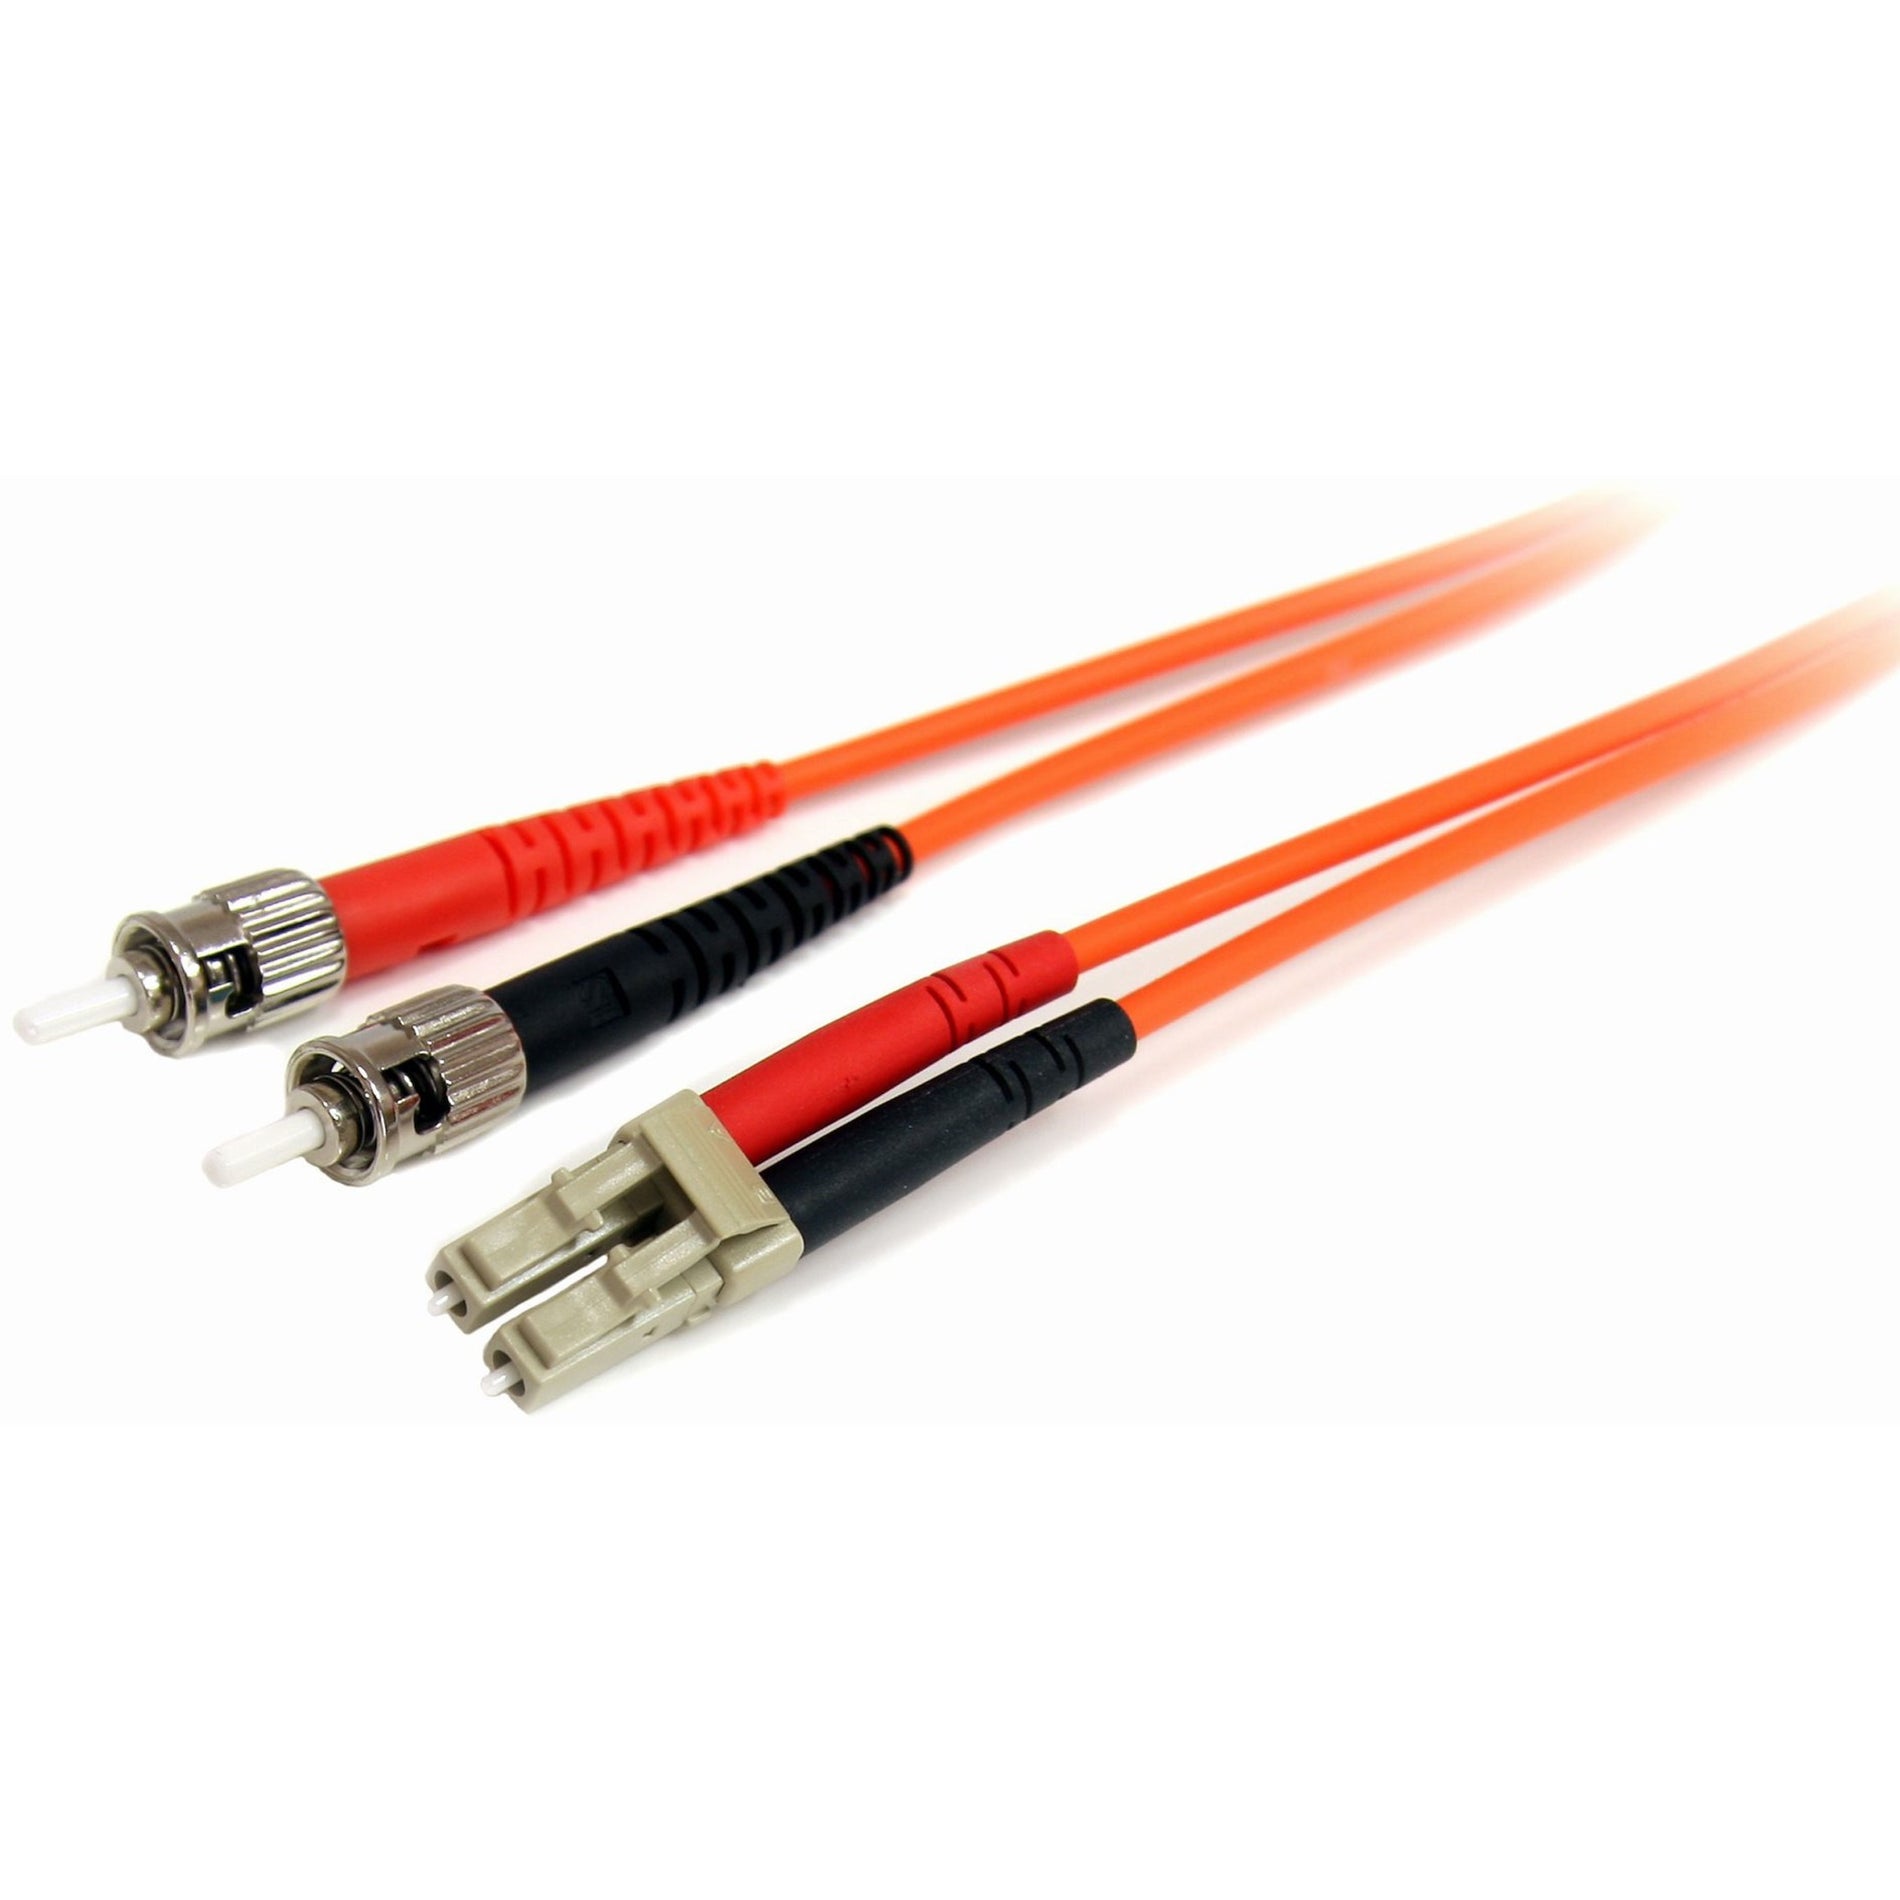 StarTech.com FIBLCST2 2m Multimode 62.5/125 Duplex Fiber Patch Cable LC - ST, 10 Gbit/s Data Transfer Rate, Orange